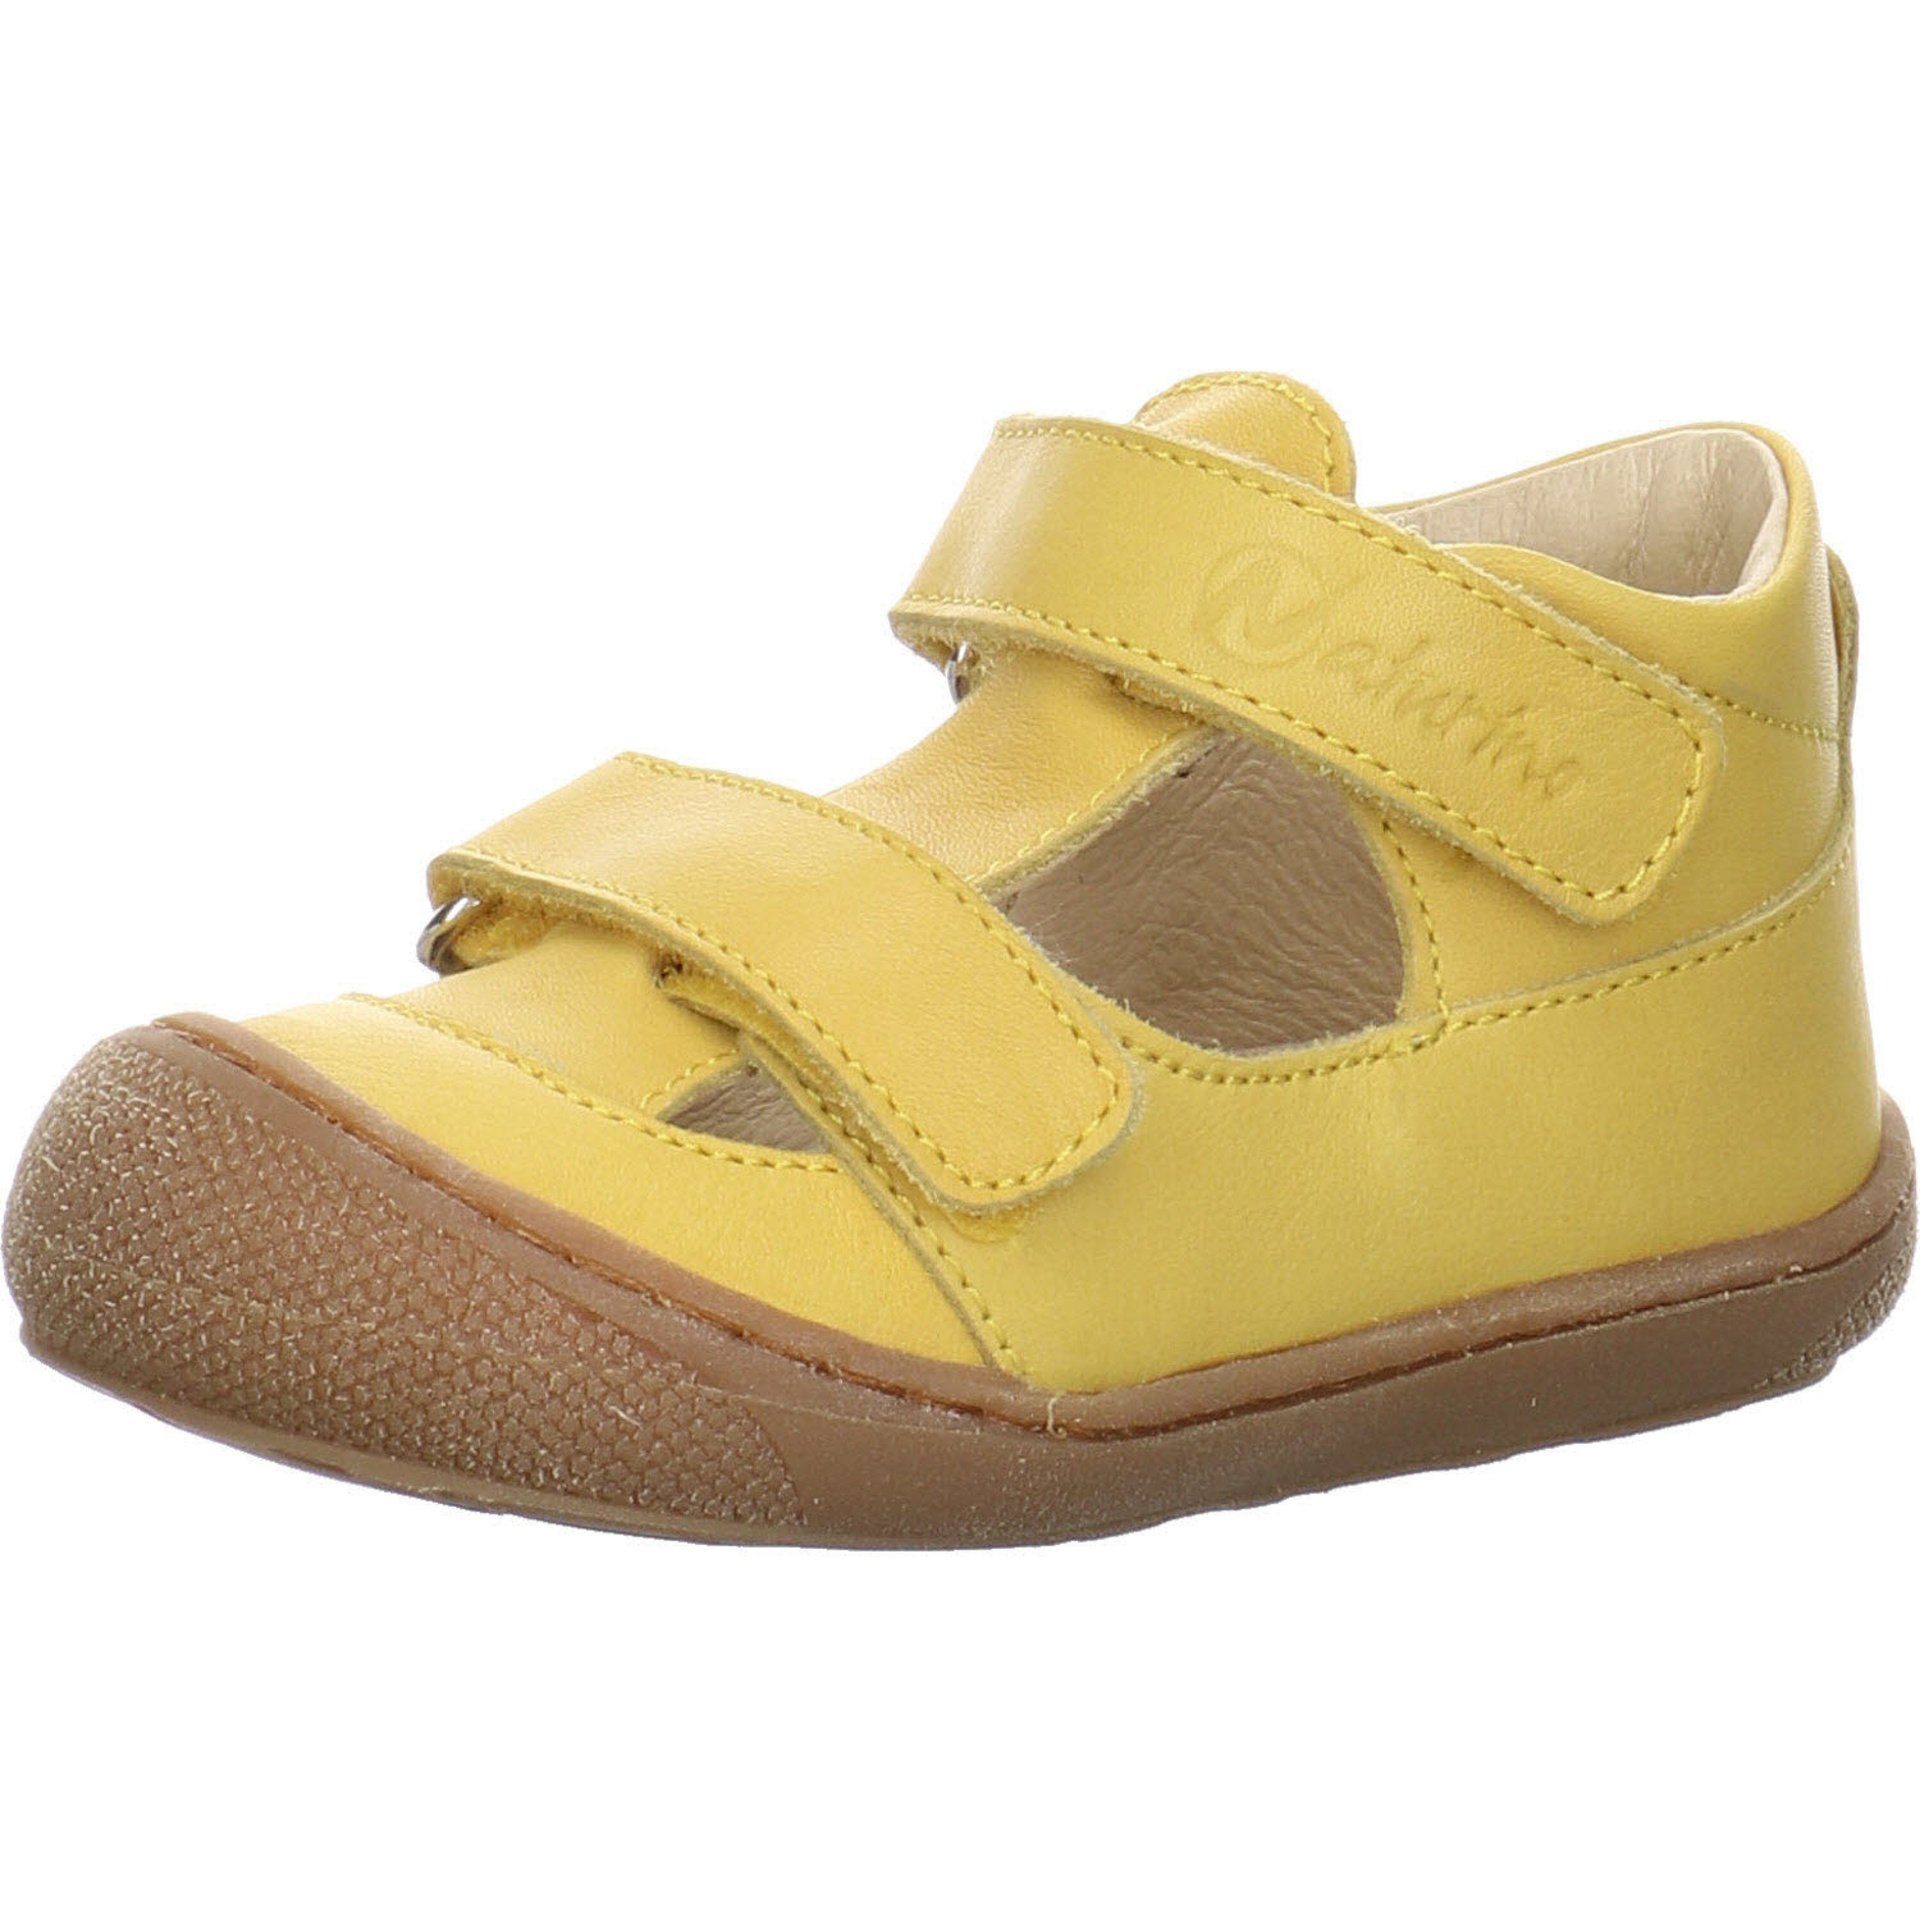 Jungen hell Puffy Naturino Sandalen Schuhe Minilette gelb Lauflernschuh Glattleder